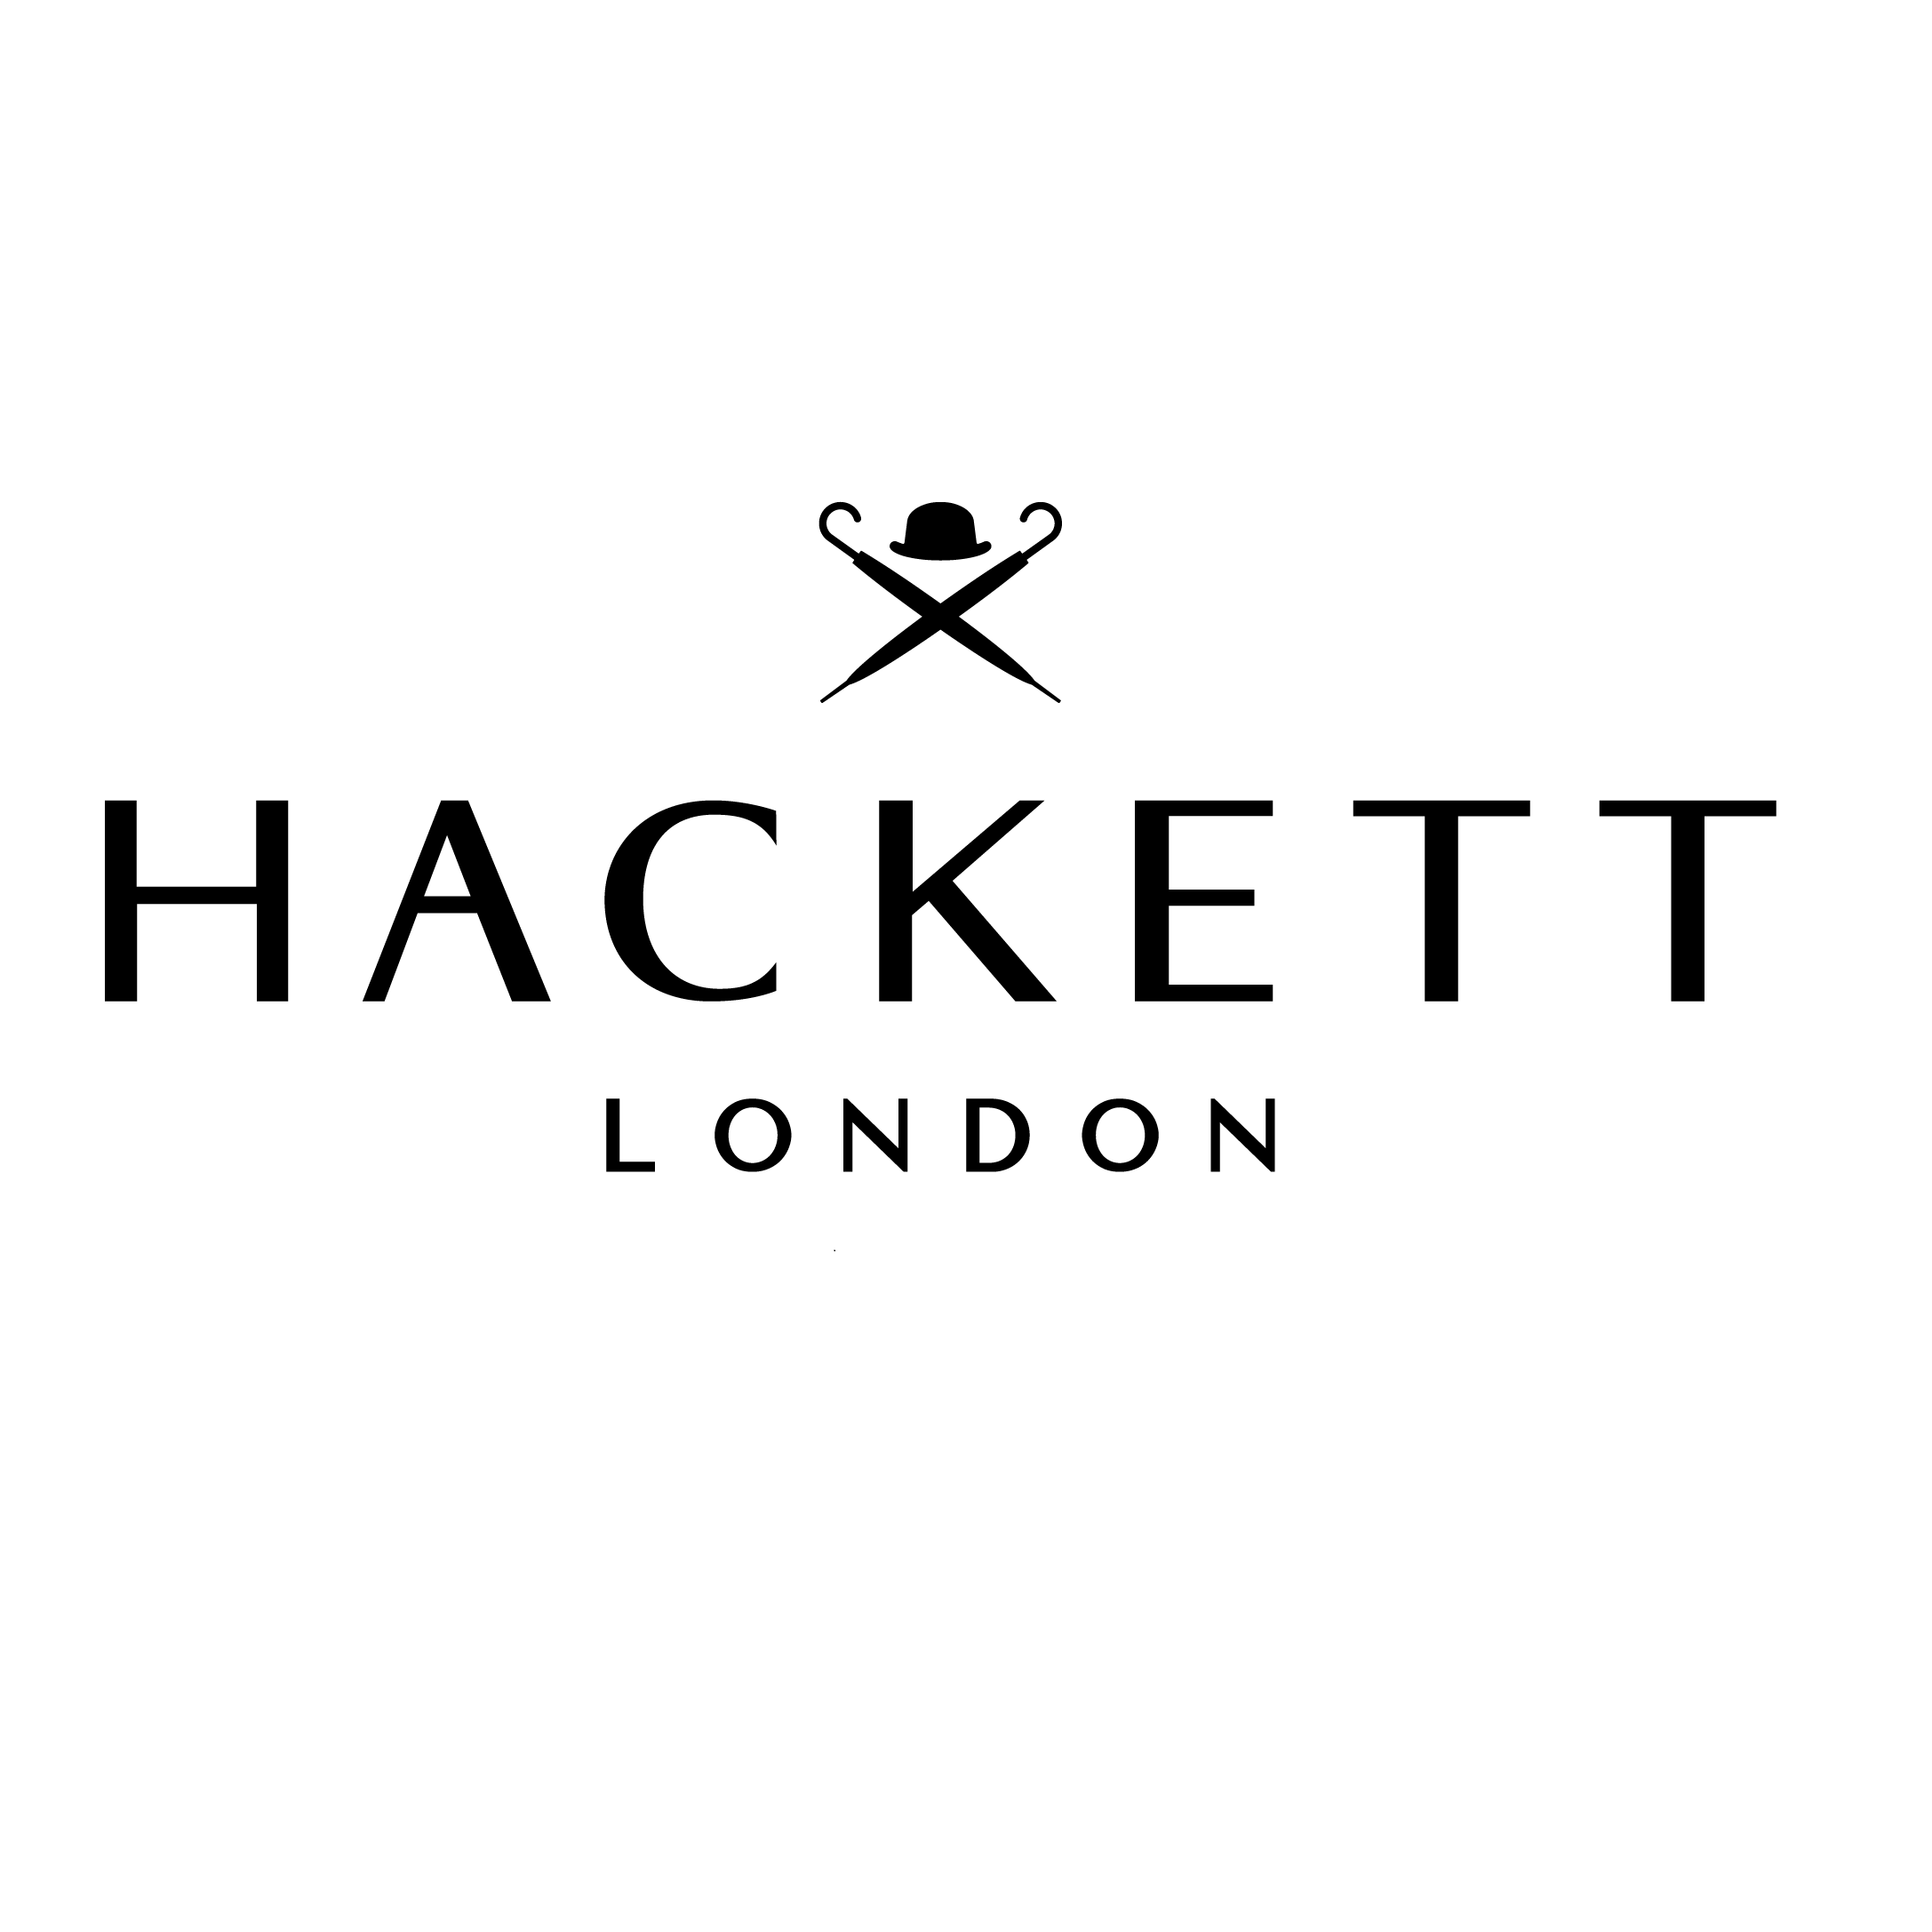 Hackett London Kustlaan Knokke